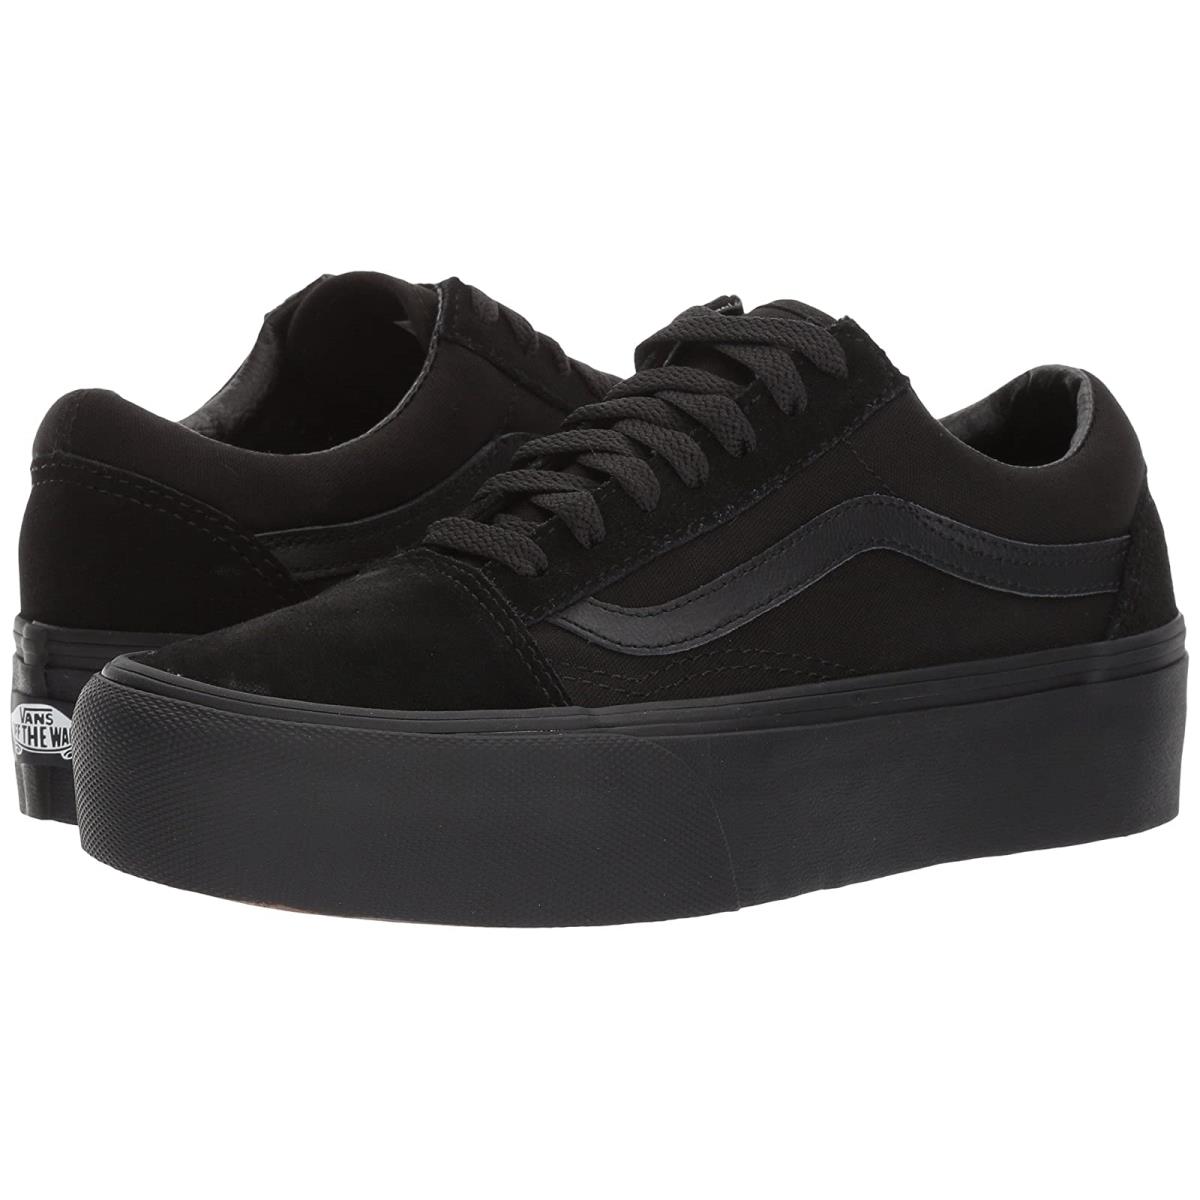 Unisex Sneakers Athletic Shoes Vans Old Skool Platform Black/Black